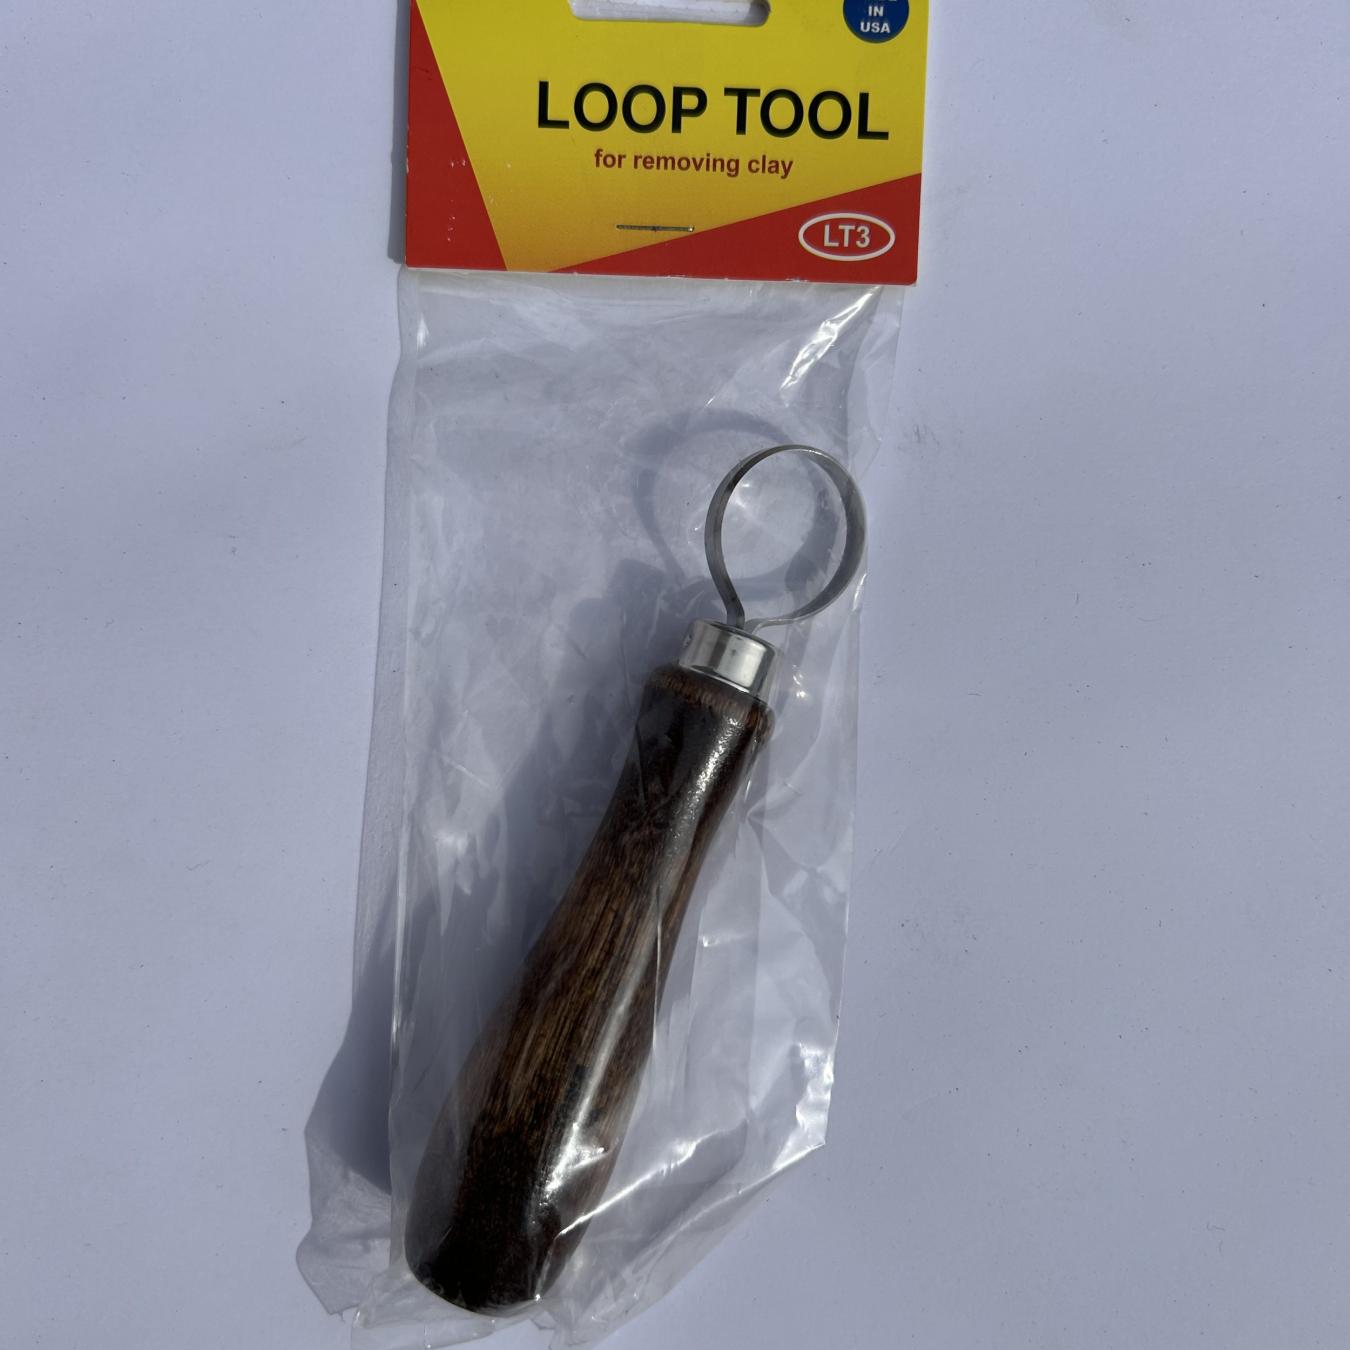 25mm Circular loop tool